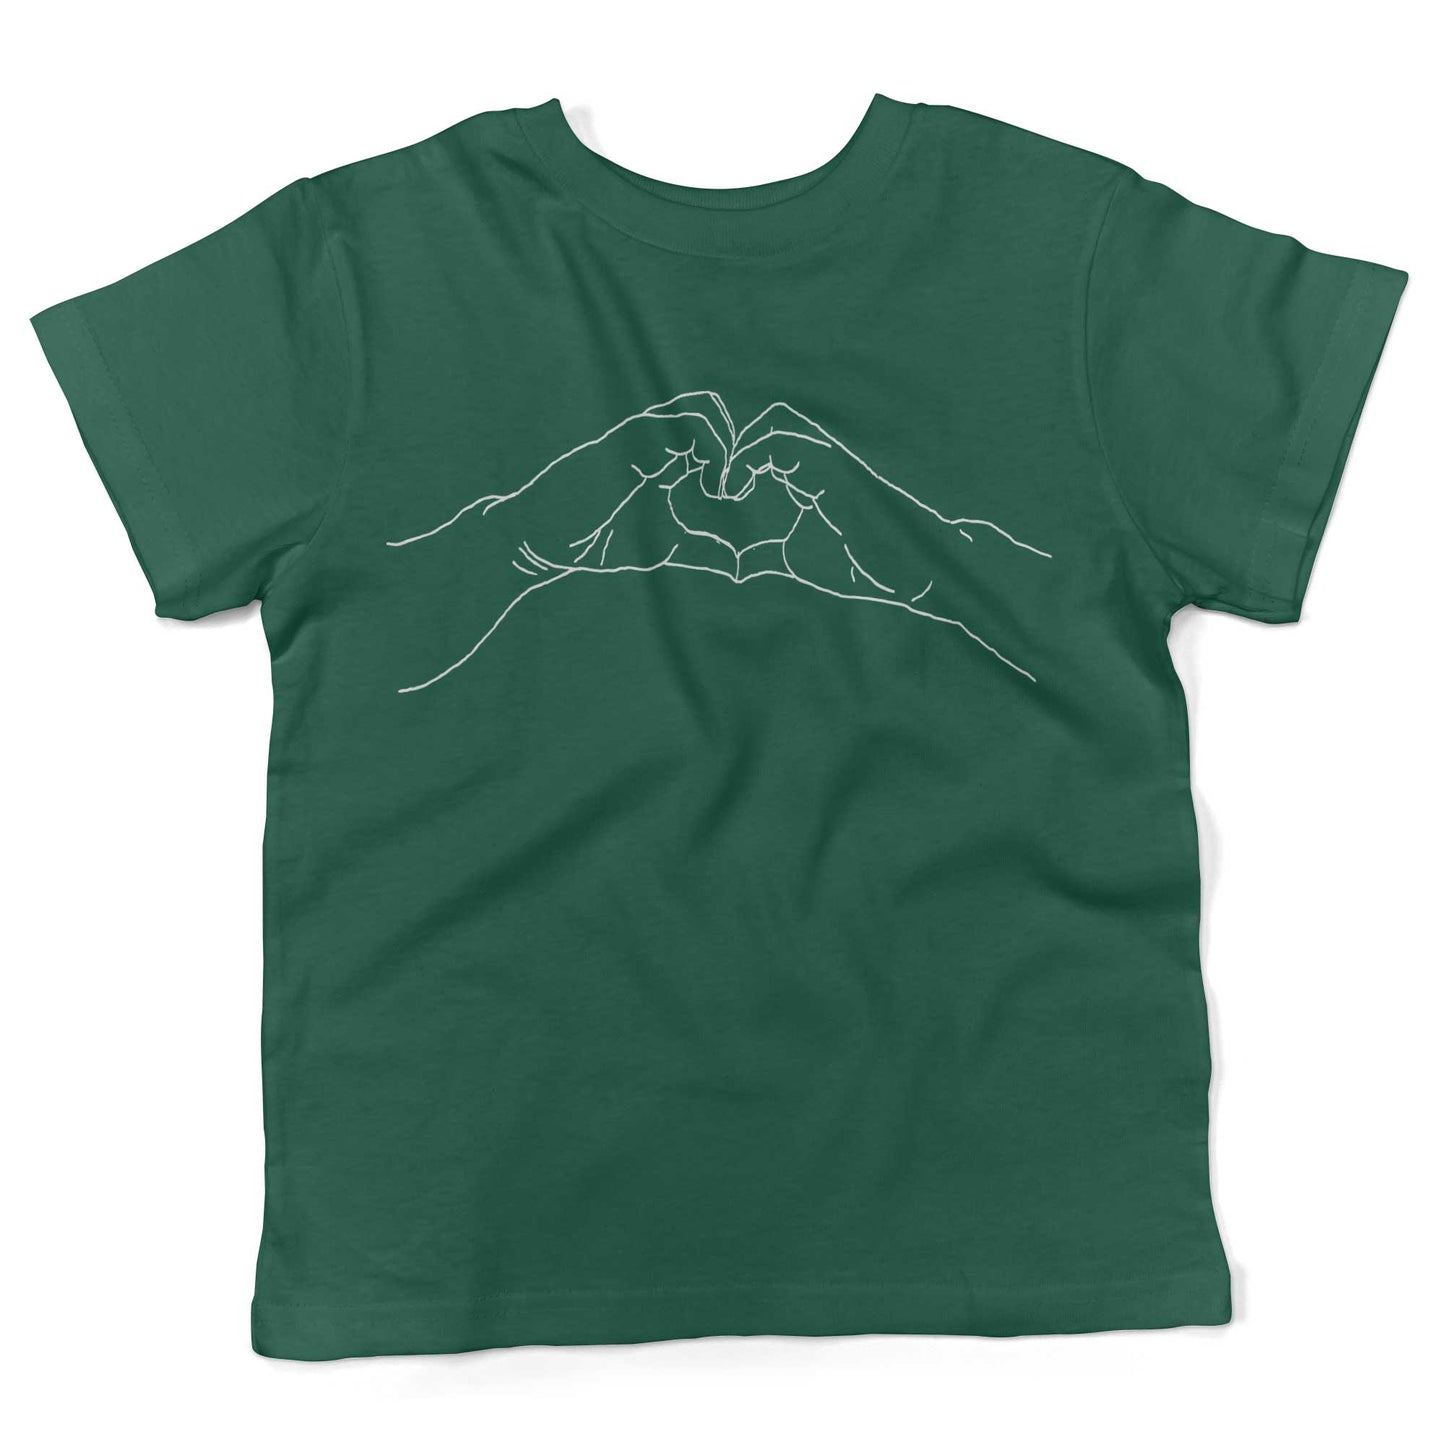 Heart Hands Toddler Shirt-Kelly Green-2T